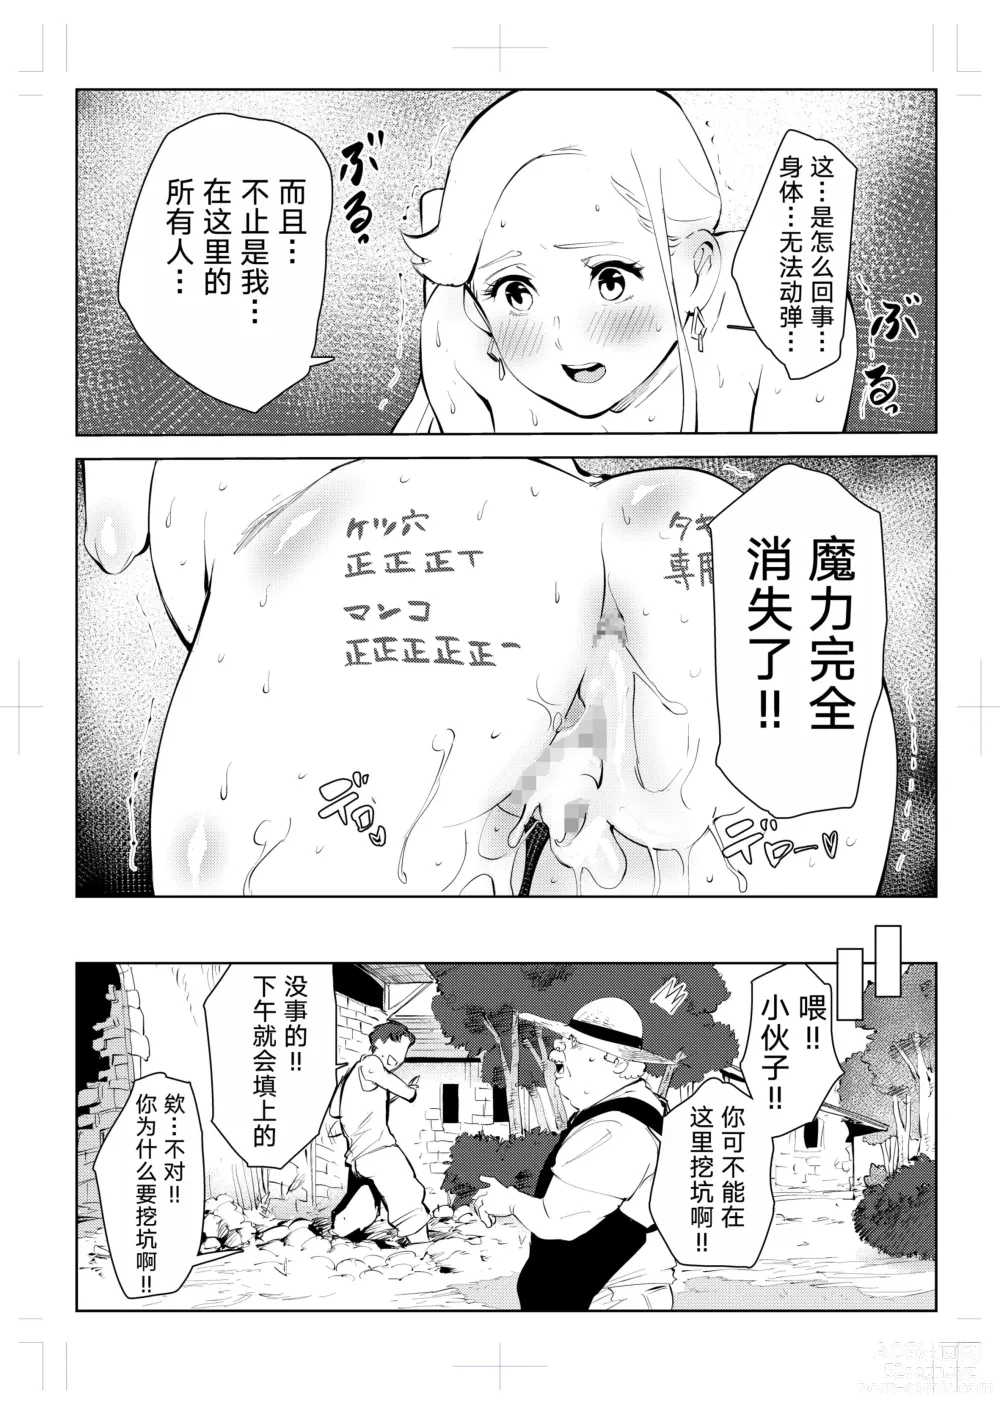 Page 111 of doujinshi 40-sai no Mahoutsukai 0